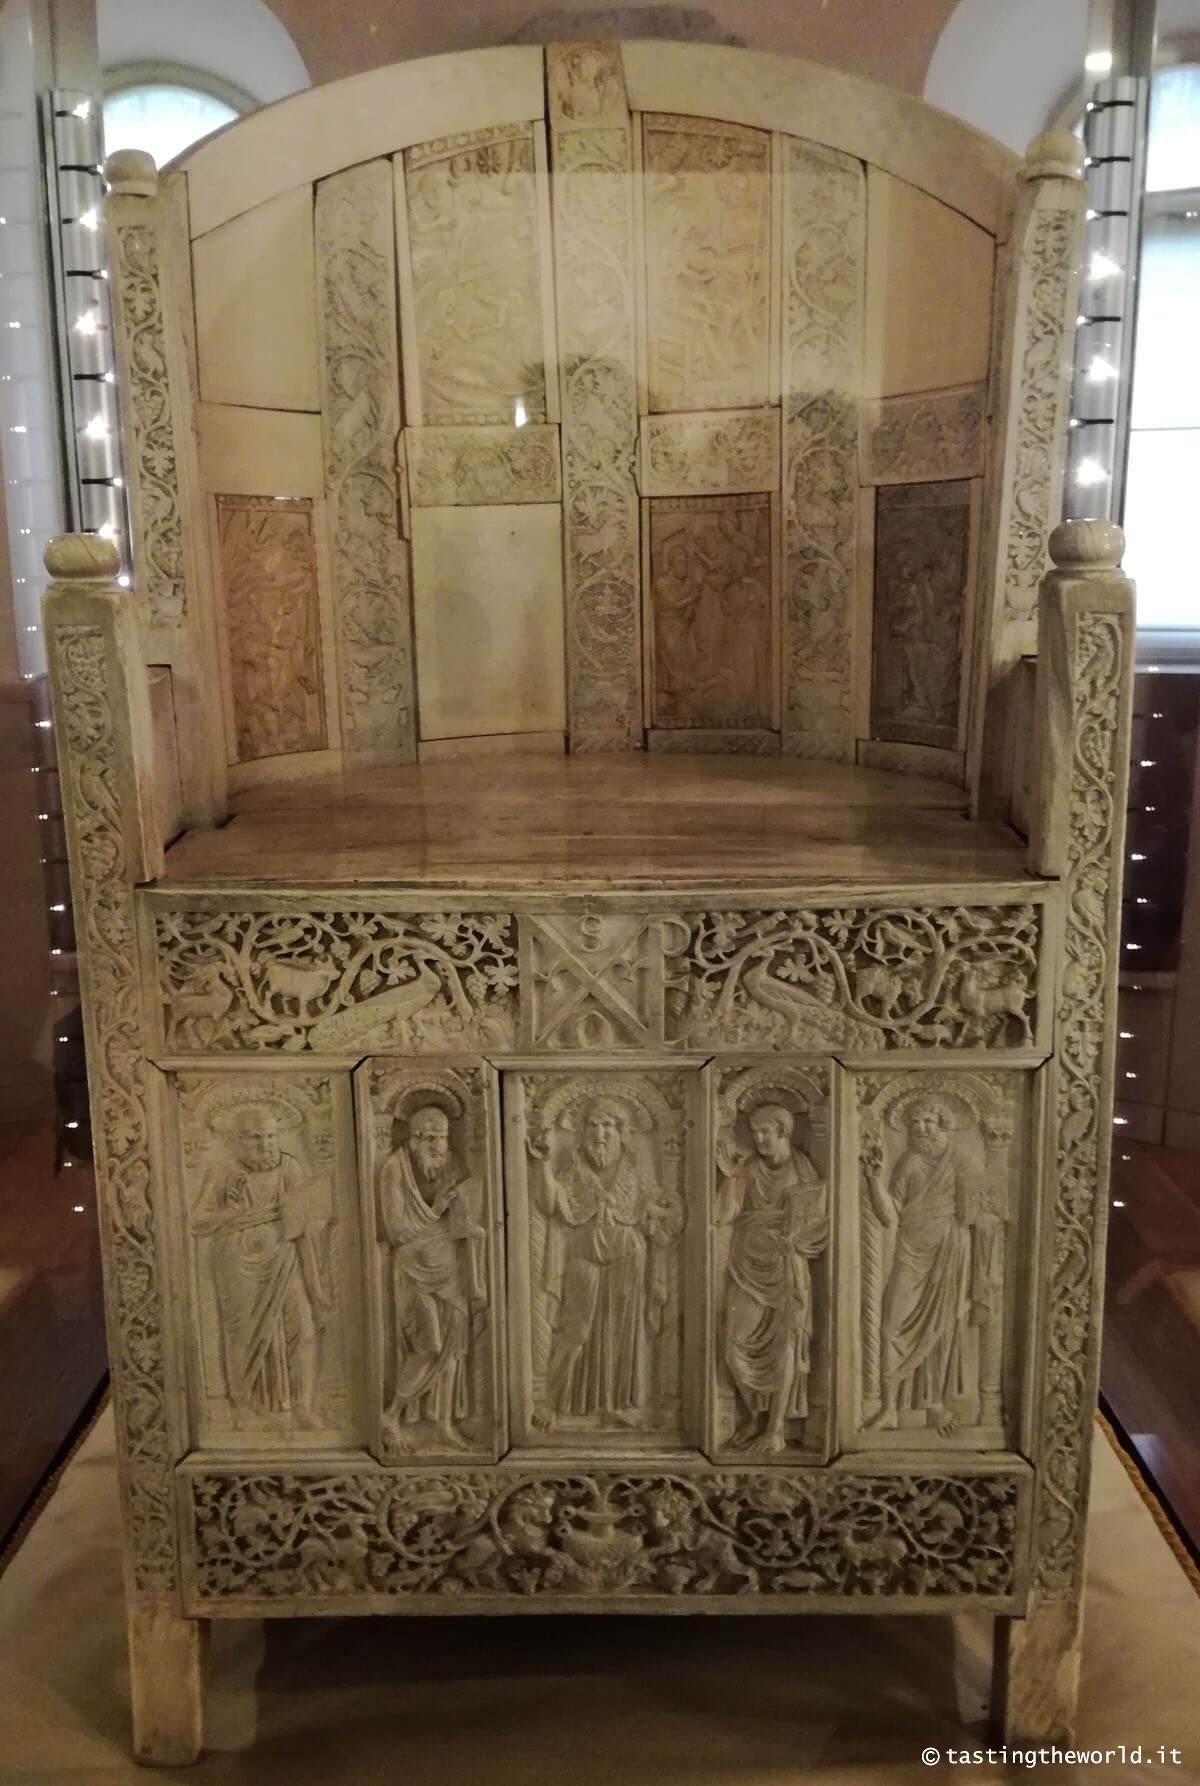 Cattedra vescovile di Massimiano, Ravenna